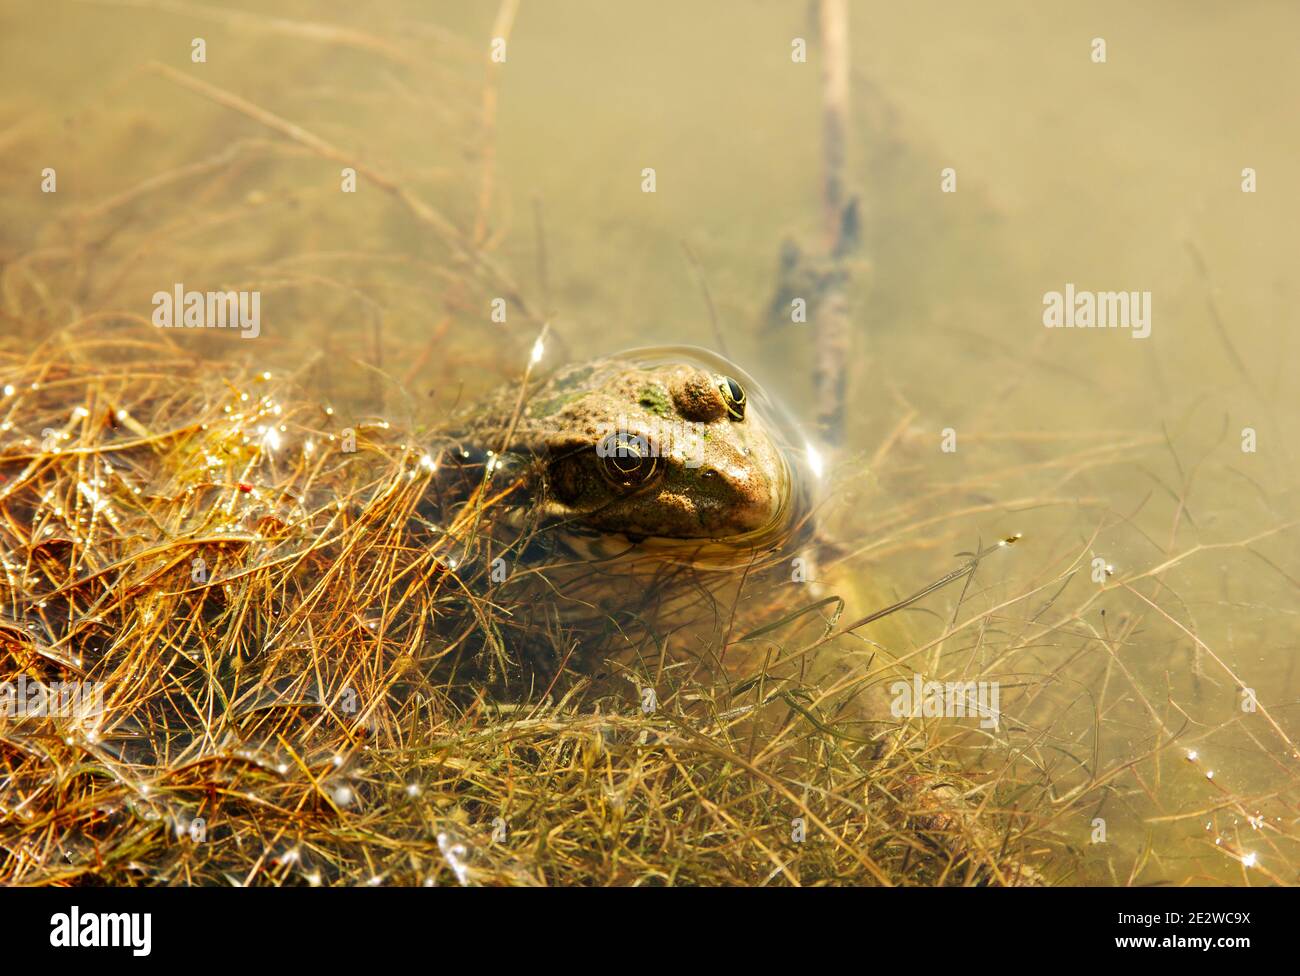 Der Frosch im Wasser. Kopf eines Marschfrosches auf einem natürlichen Lebensräume Hintergrund. Pelophylax ridibundus. Ranidae. Tier ruht auf einem Haken Stockfoto